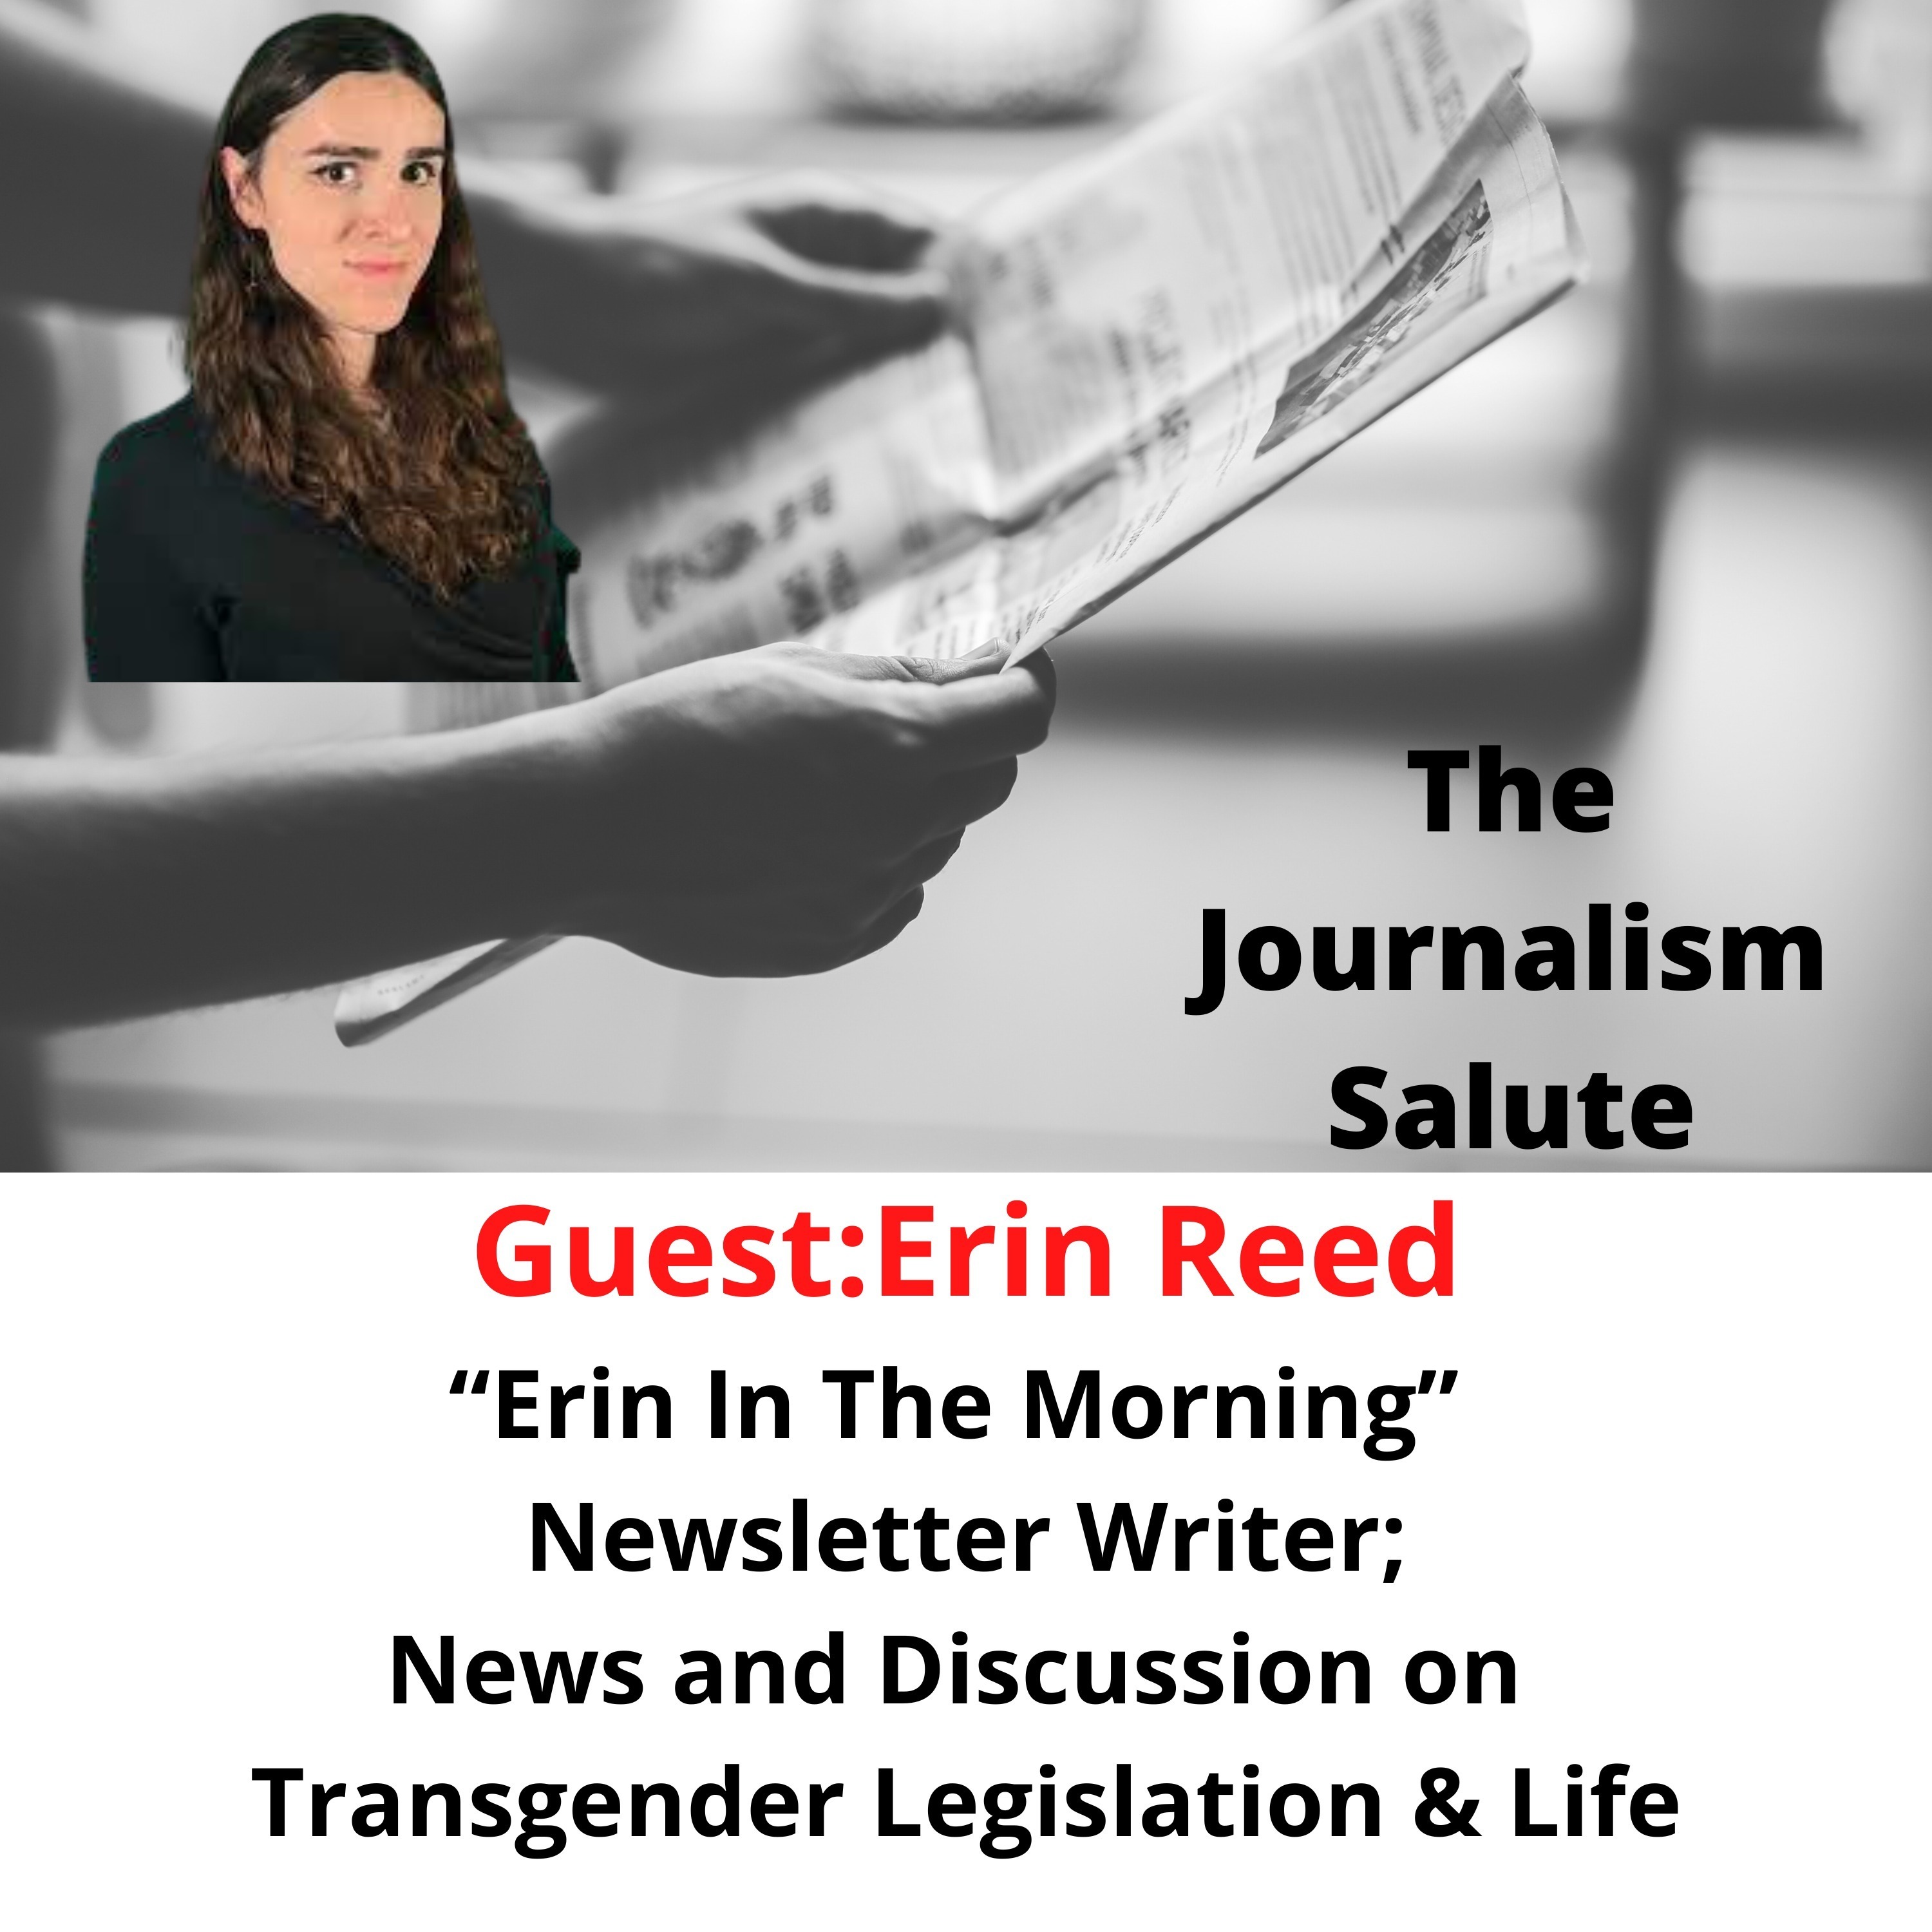 Erin Reed, Transgender Journalist, Newsletter Writer ”Erin In The Morning”